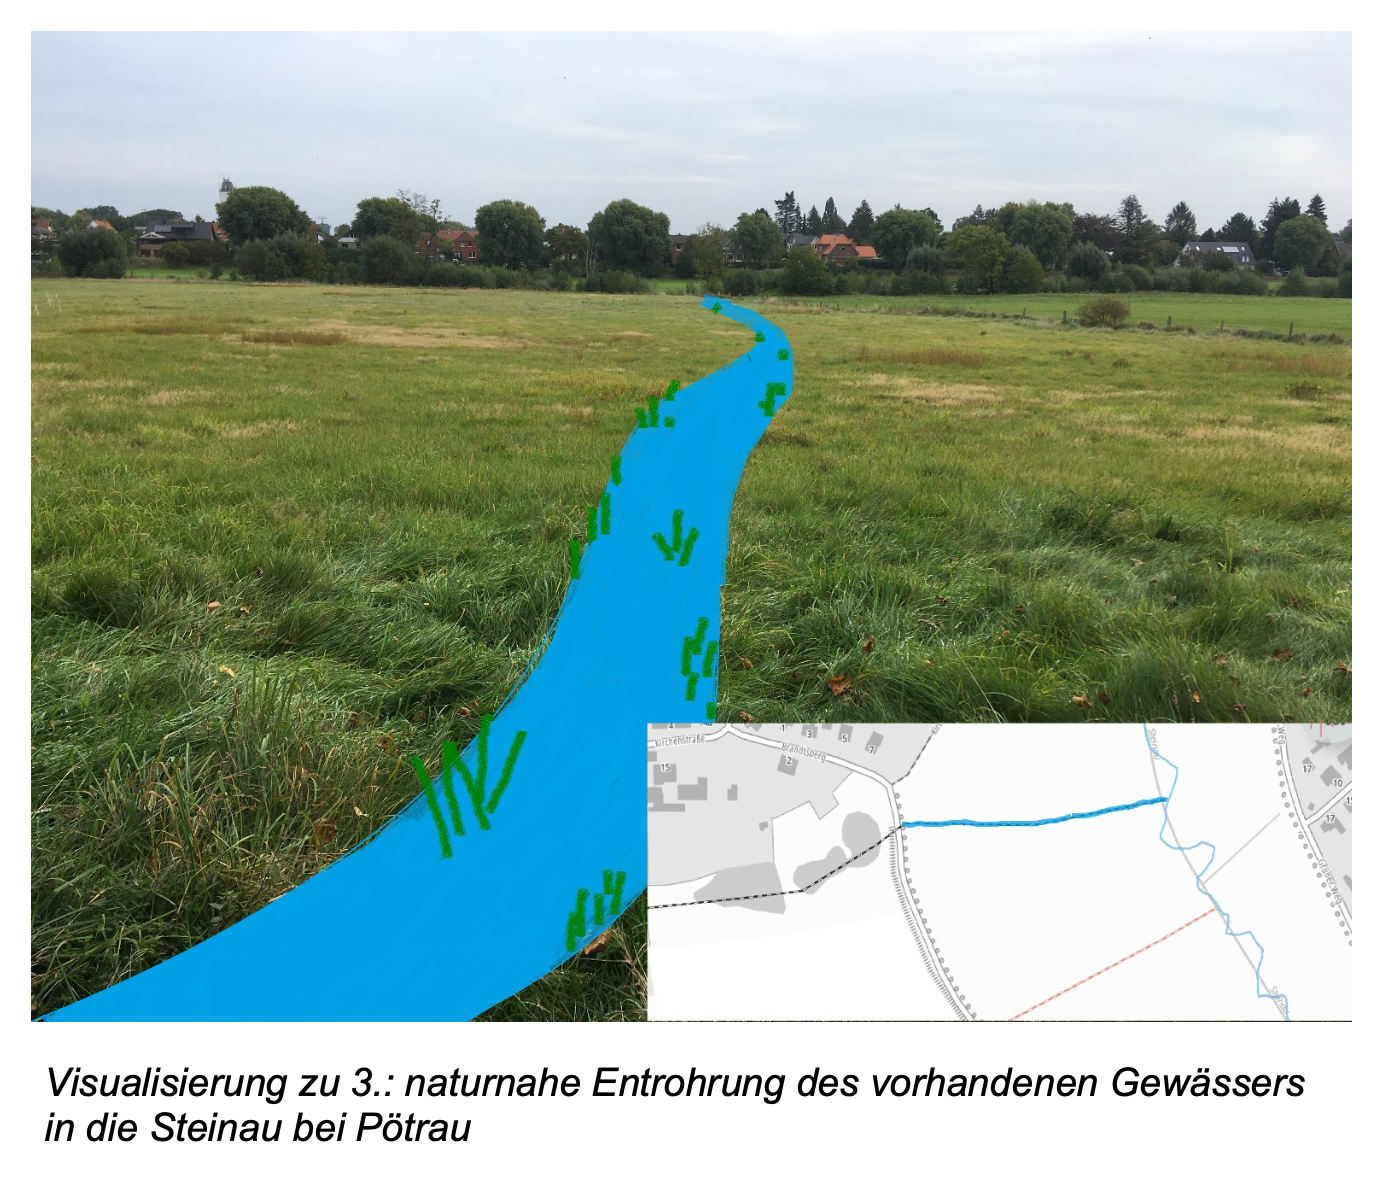 Visualisierung zu 3.: naturnahe Entrohrung des vorhandenen Gewässers in die Steinau bei Pötrau, es ist ein Fluss auf einer Wiese zu sehen.